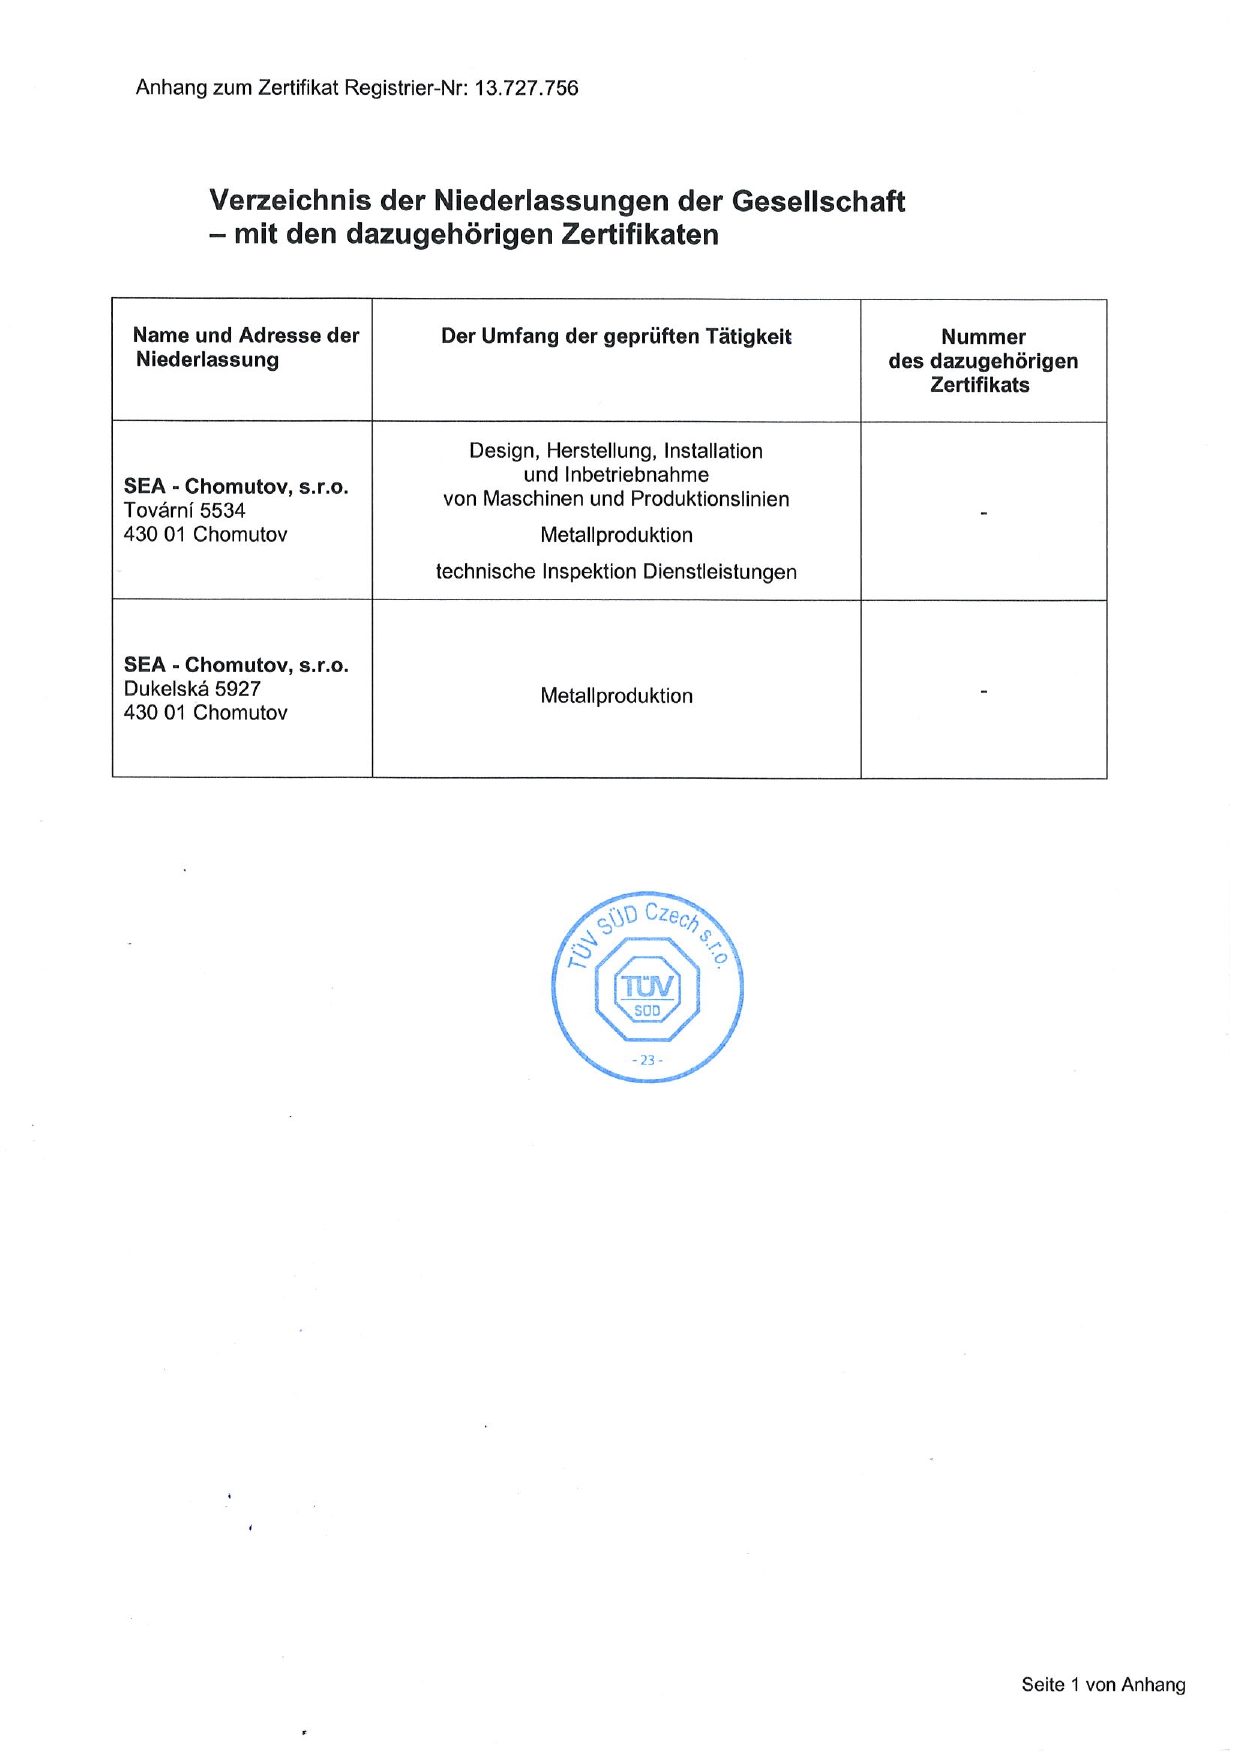 Zertifikat des Sicherheitsmanagements und Gesundheitsschutzes bei der Arbeit nach ISO 45001:2018